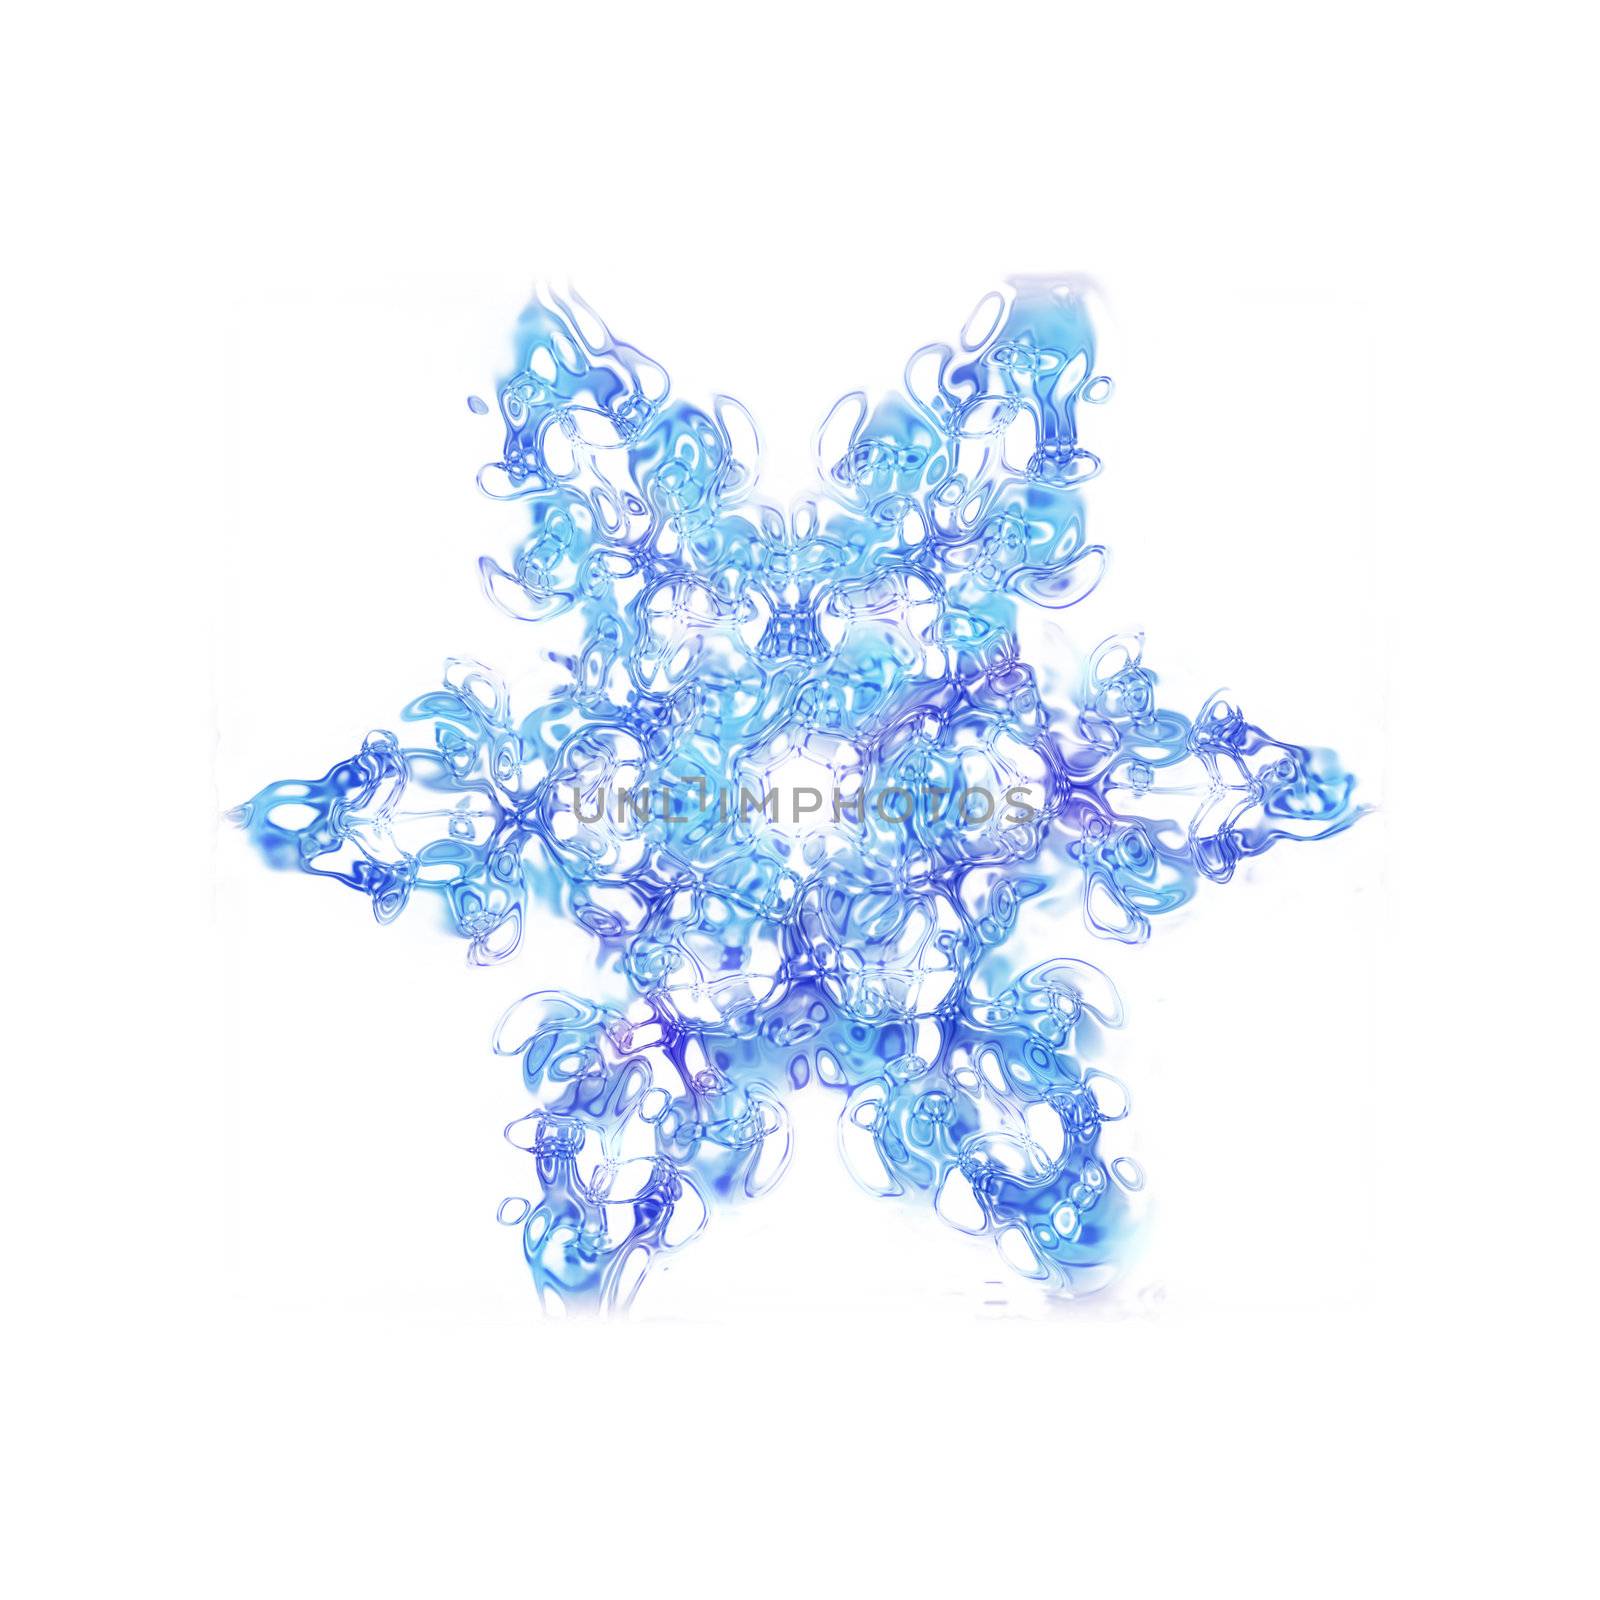 snowflake by jonnysek